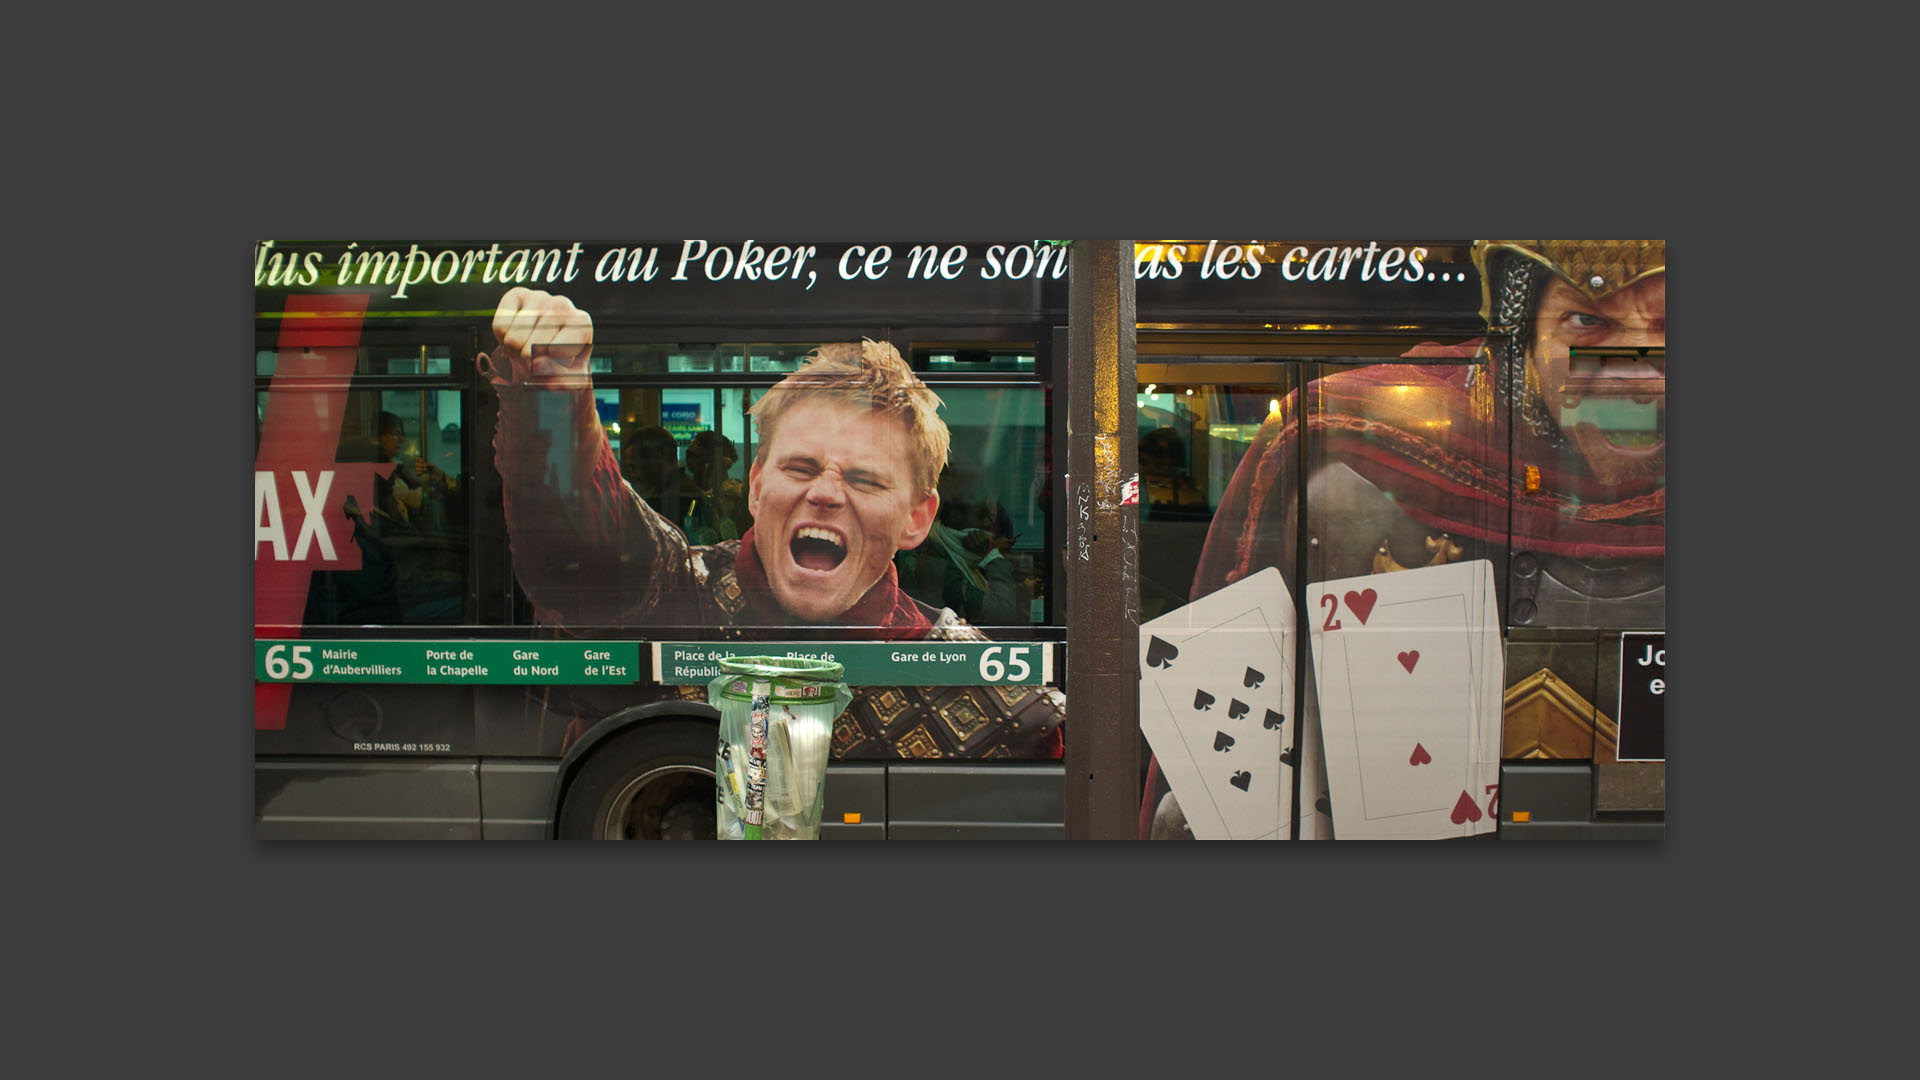 Autobus couvert d'une publicité pour le poker, boulevard Beaumarchais, à Paris.